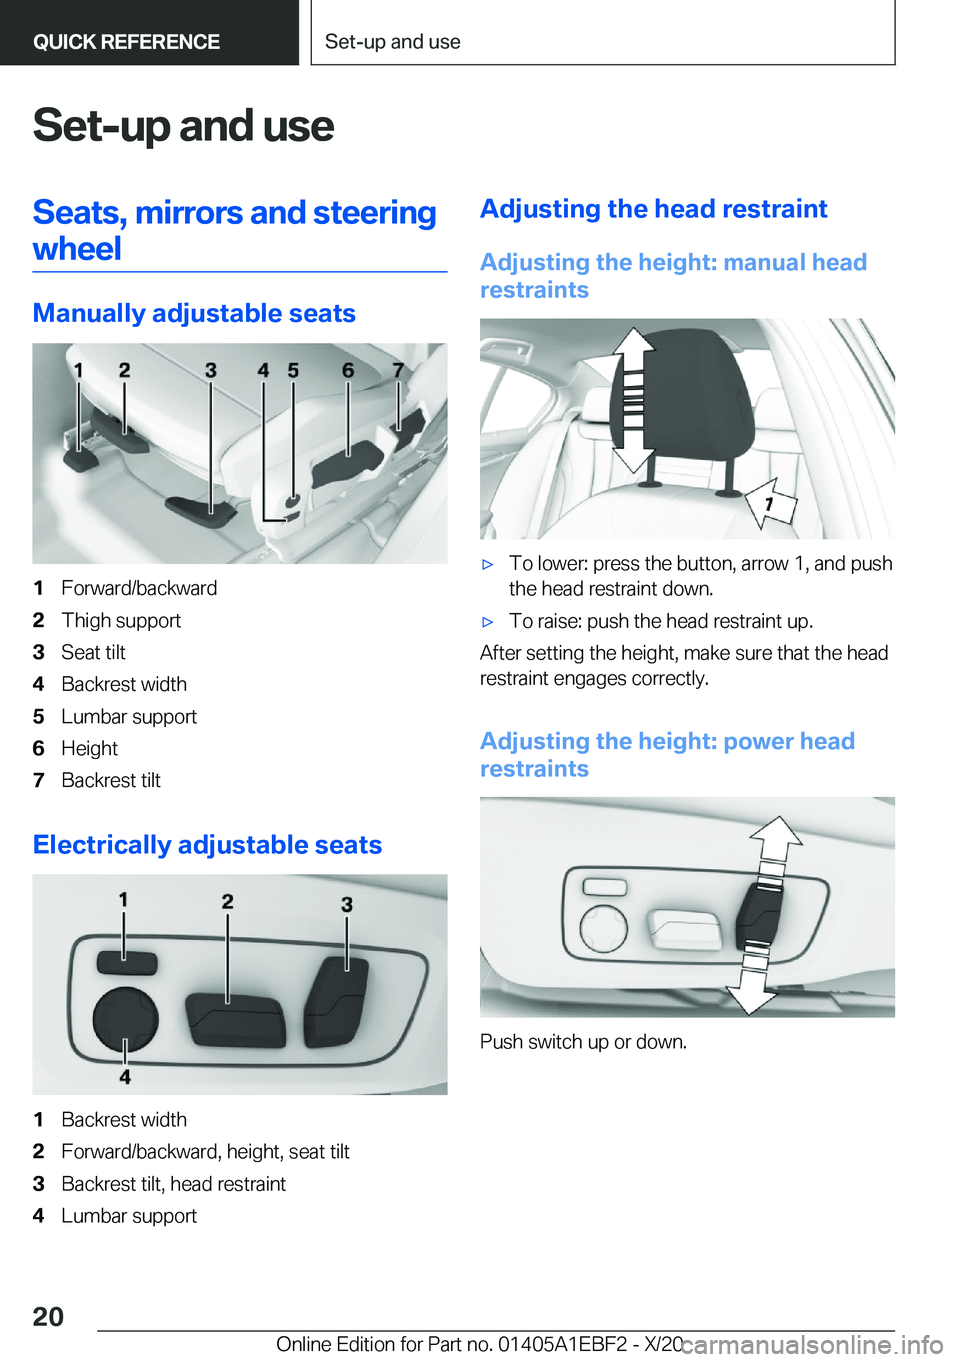 BMW 3 SERIES 2021 User Guide �S�e�t�-�u�p��a�n�d��u�s�e�S�e�a�t�s�,��m�i�r�r�o�r�s��a�n�d��s�t�e�e�r�i�n�g�w�h�e�e�l
�M�a�n�u�a�l�l�y��a�d�j�u�s�t�a�b�l�e��s�e�a�t�s
�1�F�o�r�w�a�r�d�/�b�a�c�k�w�a�r�d�2�T�h�i�g�h��s�u�p�p